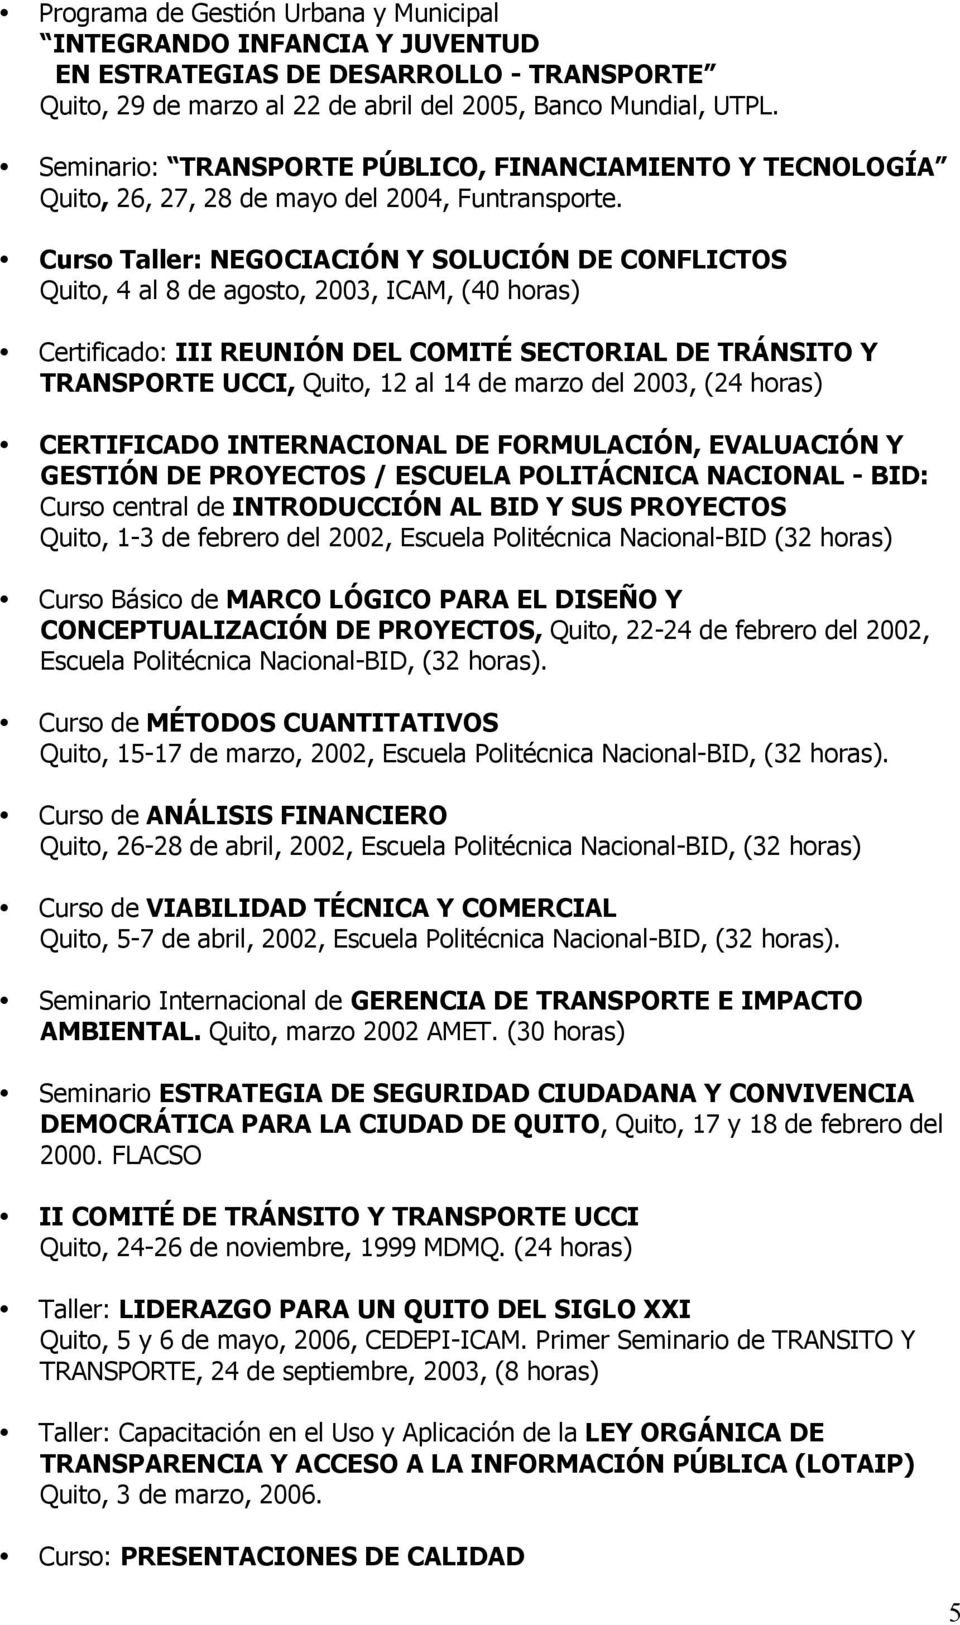 Curs Taller: NEGOCIACIÓN Y SOLUCIÓN DE CONFLICTOS Quit, 4 al 8 de agst, 2003, ICAM, (40 hras) Certificad: III REUNIÓN DEL COMITÉ SECTORIAL DE TRÁNSITO Y TRANSPORTE UCCI, Quit, 12 al 14 de marz del